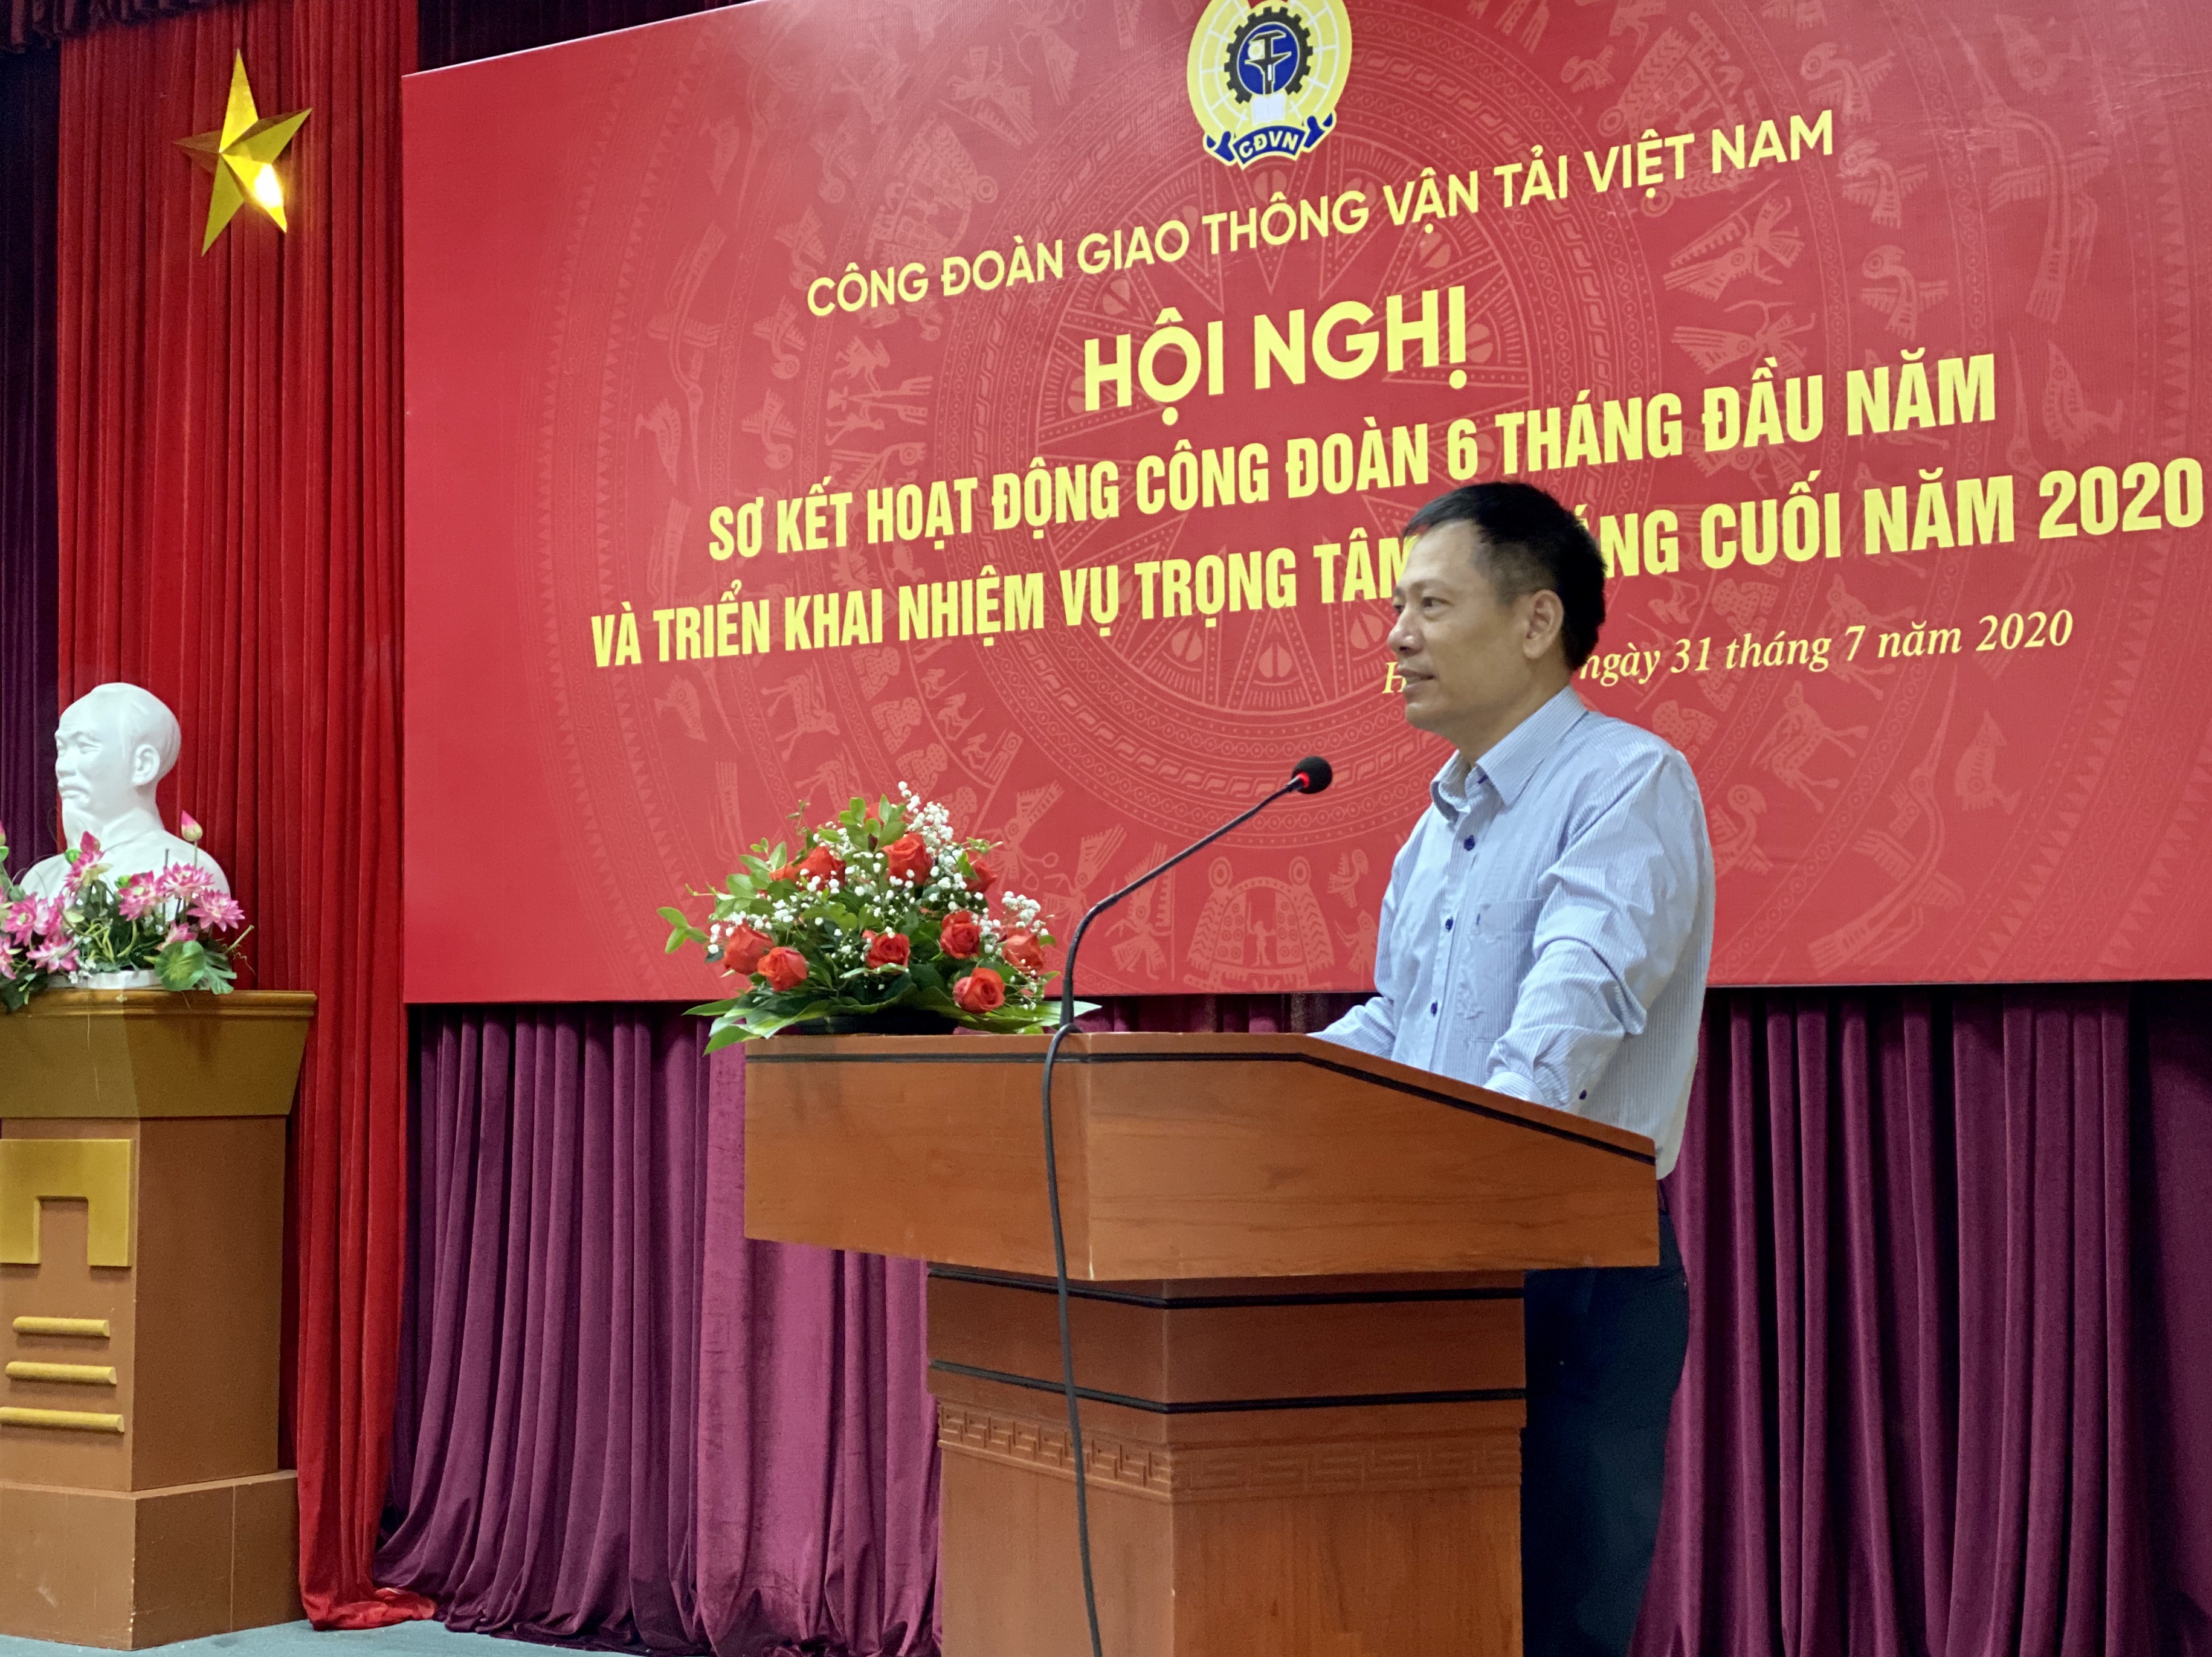 Công đoàn GTVT Việt Nam tổ chức Hội nghị sơ kết hoạt động công đoàn 6 tháng đầu năm, triển khai nhiệm vụ 6 tháng cuối năm 2020